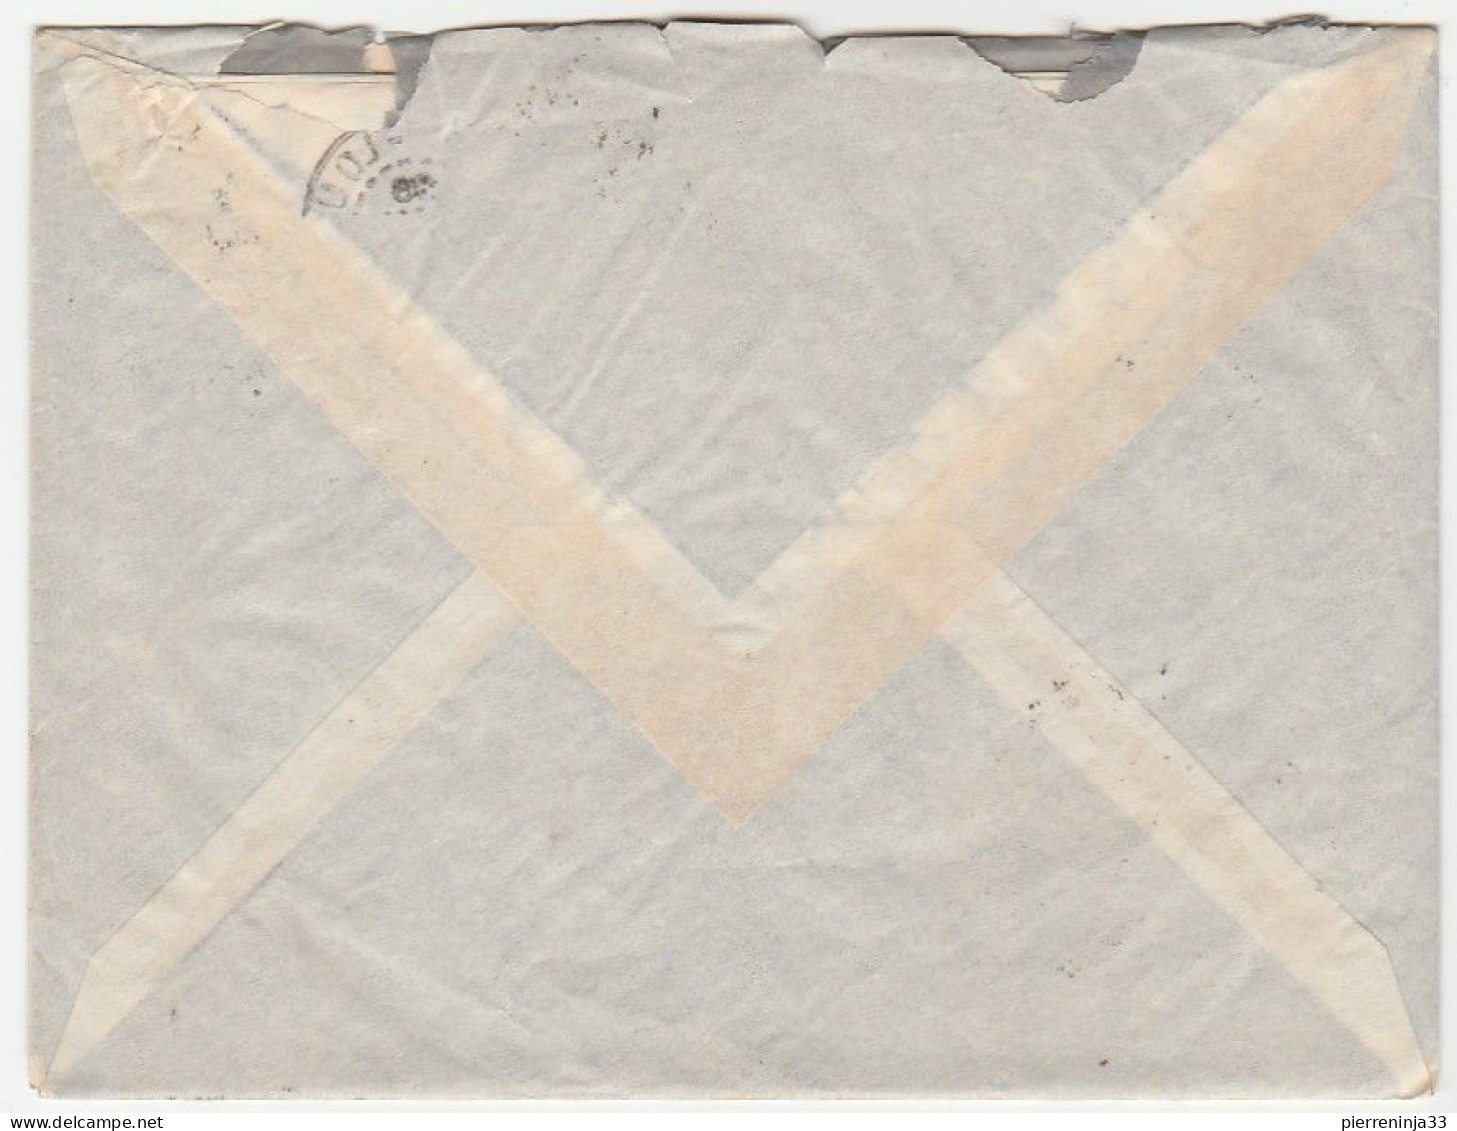 Lettre Saint Louis Du Sénégal Avec Contrôle Postal Pour Bordeaux, 1939 - Brieven En Documenten